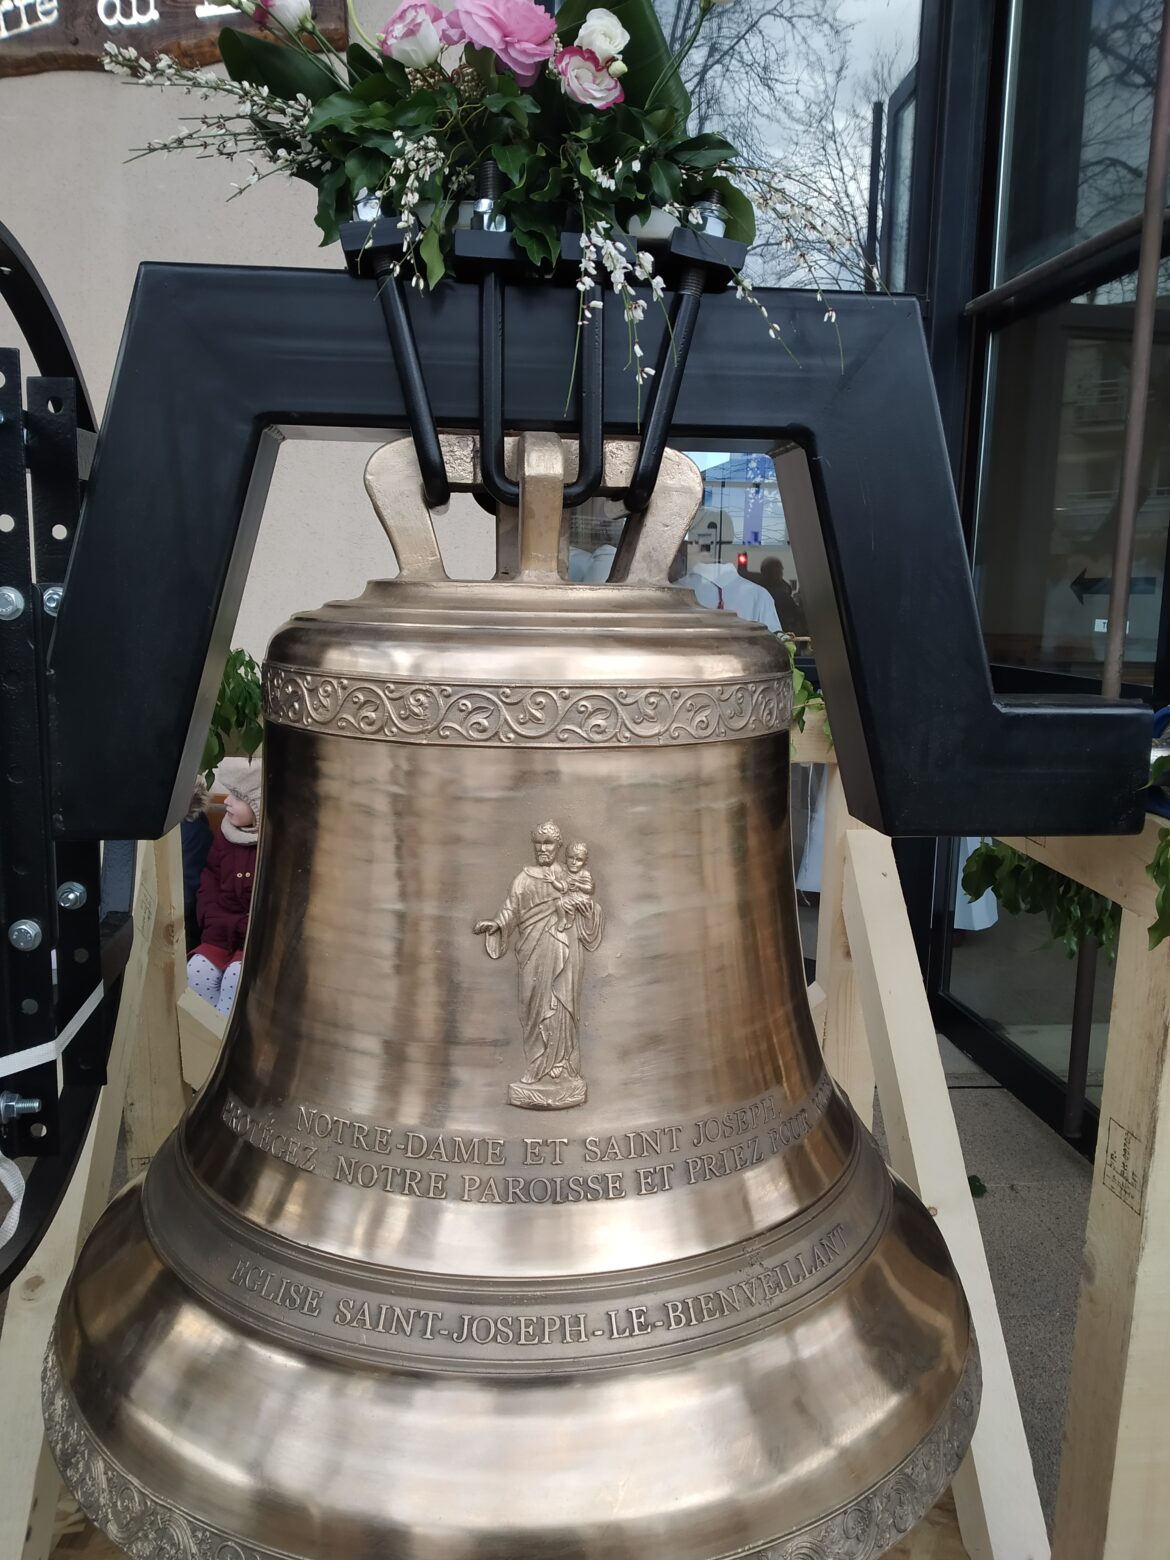 Bénédiction des cloches St-Joseph-Le Bienveillant Montigny-Voisins le 19 mars 2023 - vue globale sur une cloche